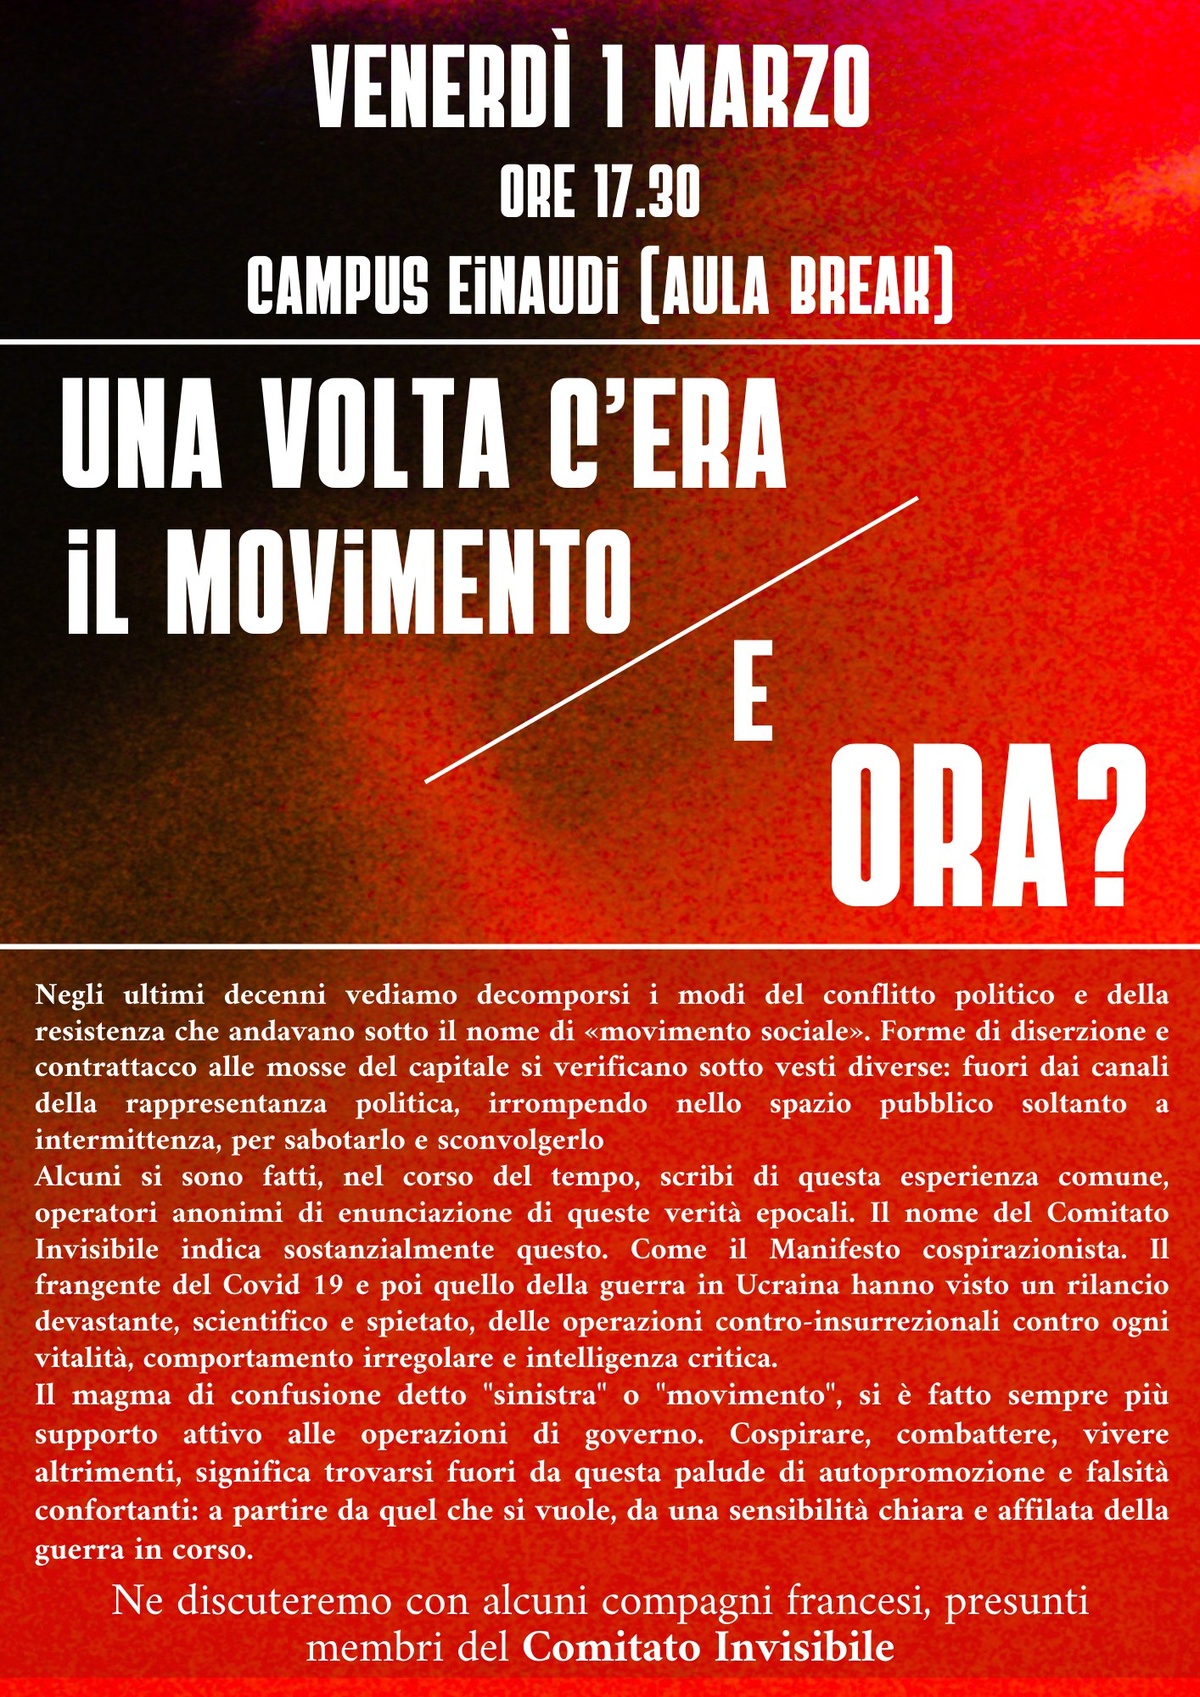 Venerdì 1 marzo, ore 18:30, campus Einaudi (Saletta Break) Una volta c'era il movimento / E ora?